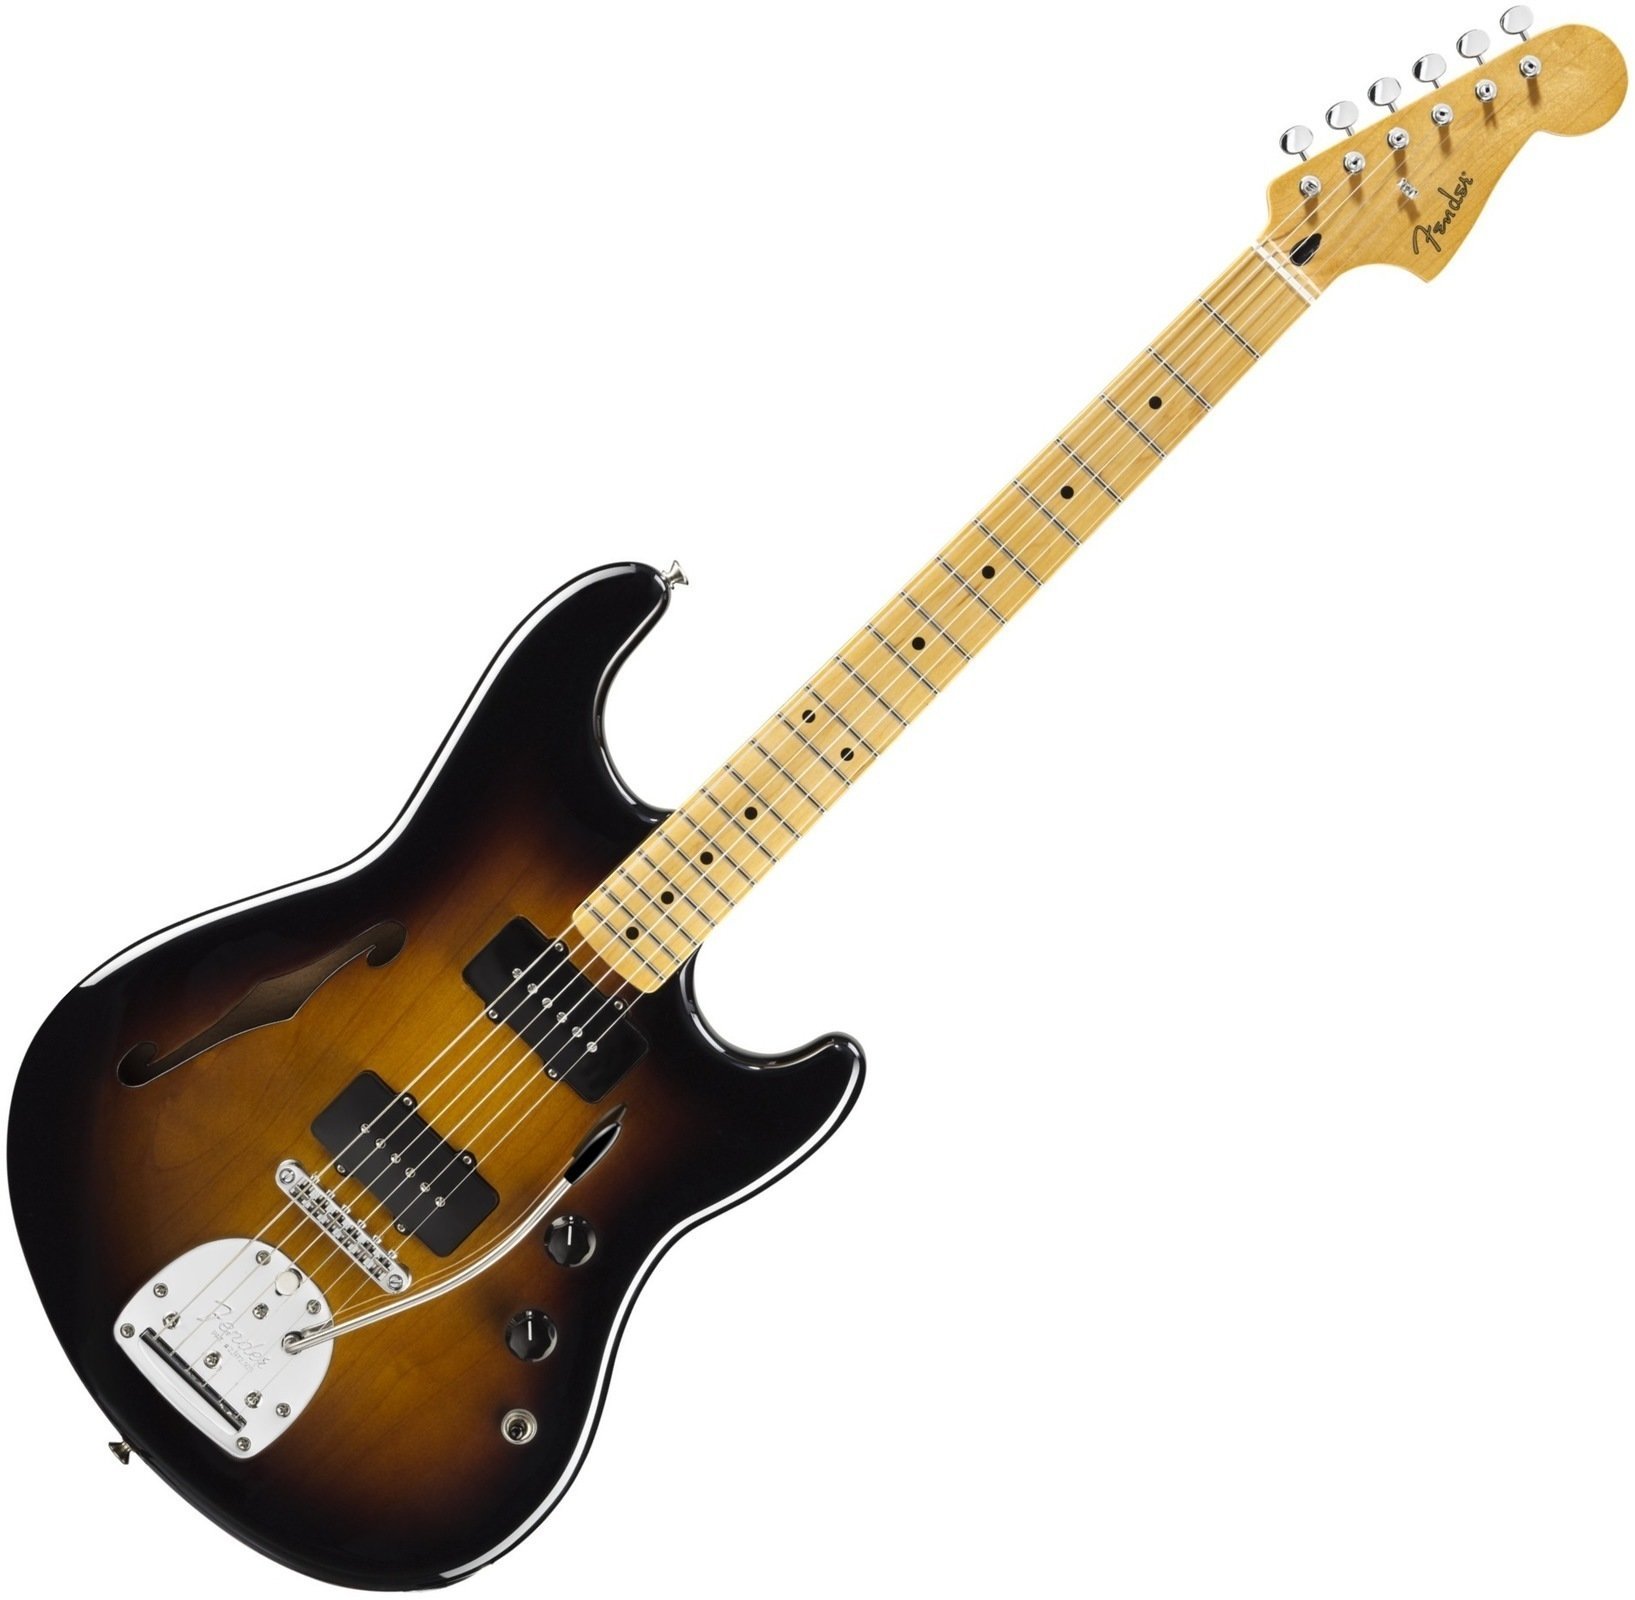 Ηλεκτρική Κιθάρα Fender Pawn Shop Offset Special, Maple Fingerboard, 2-Color Sunburst